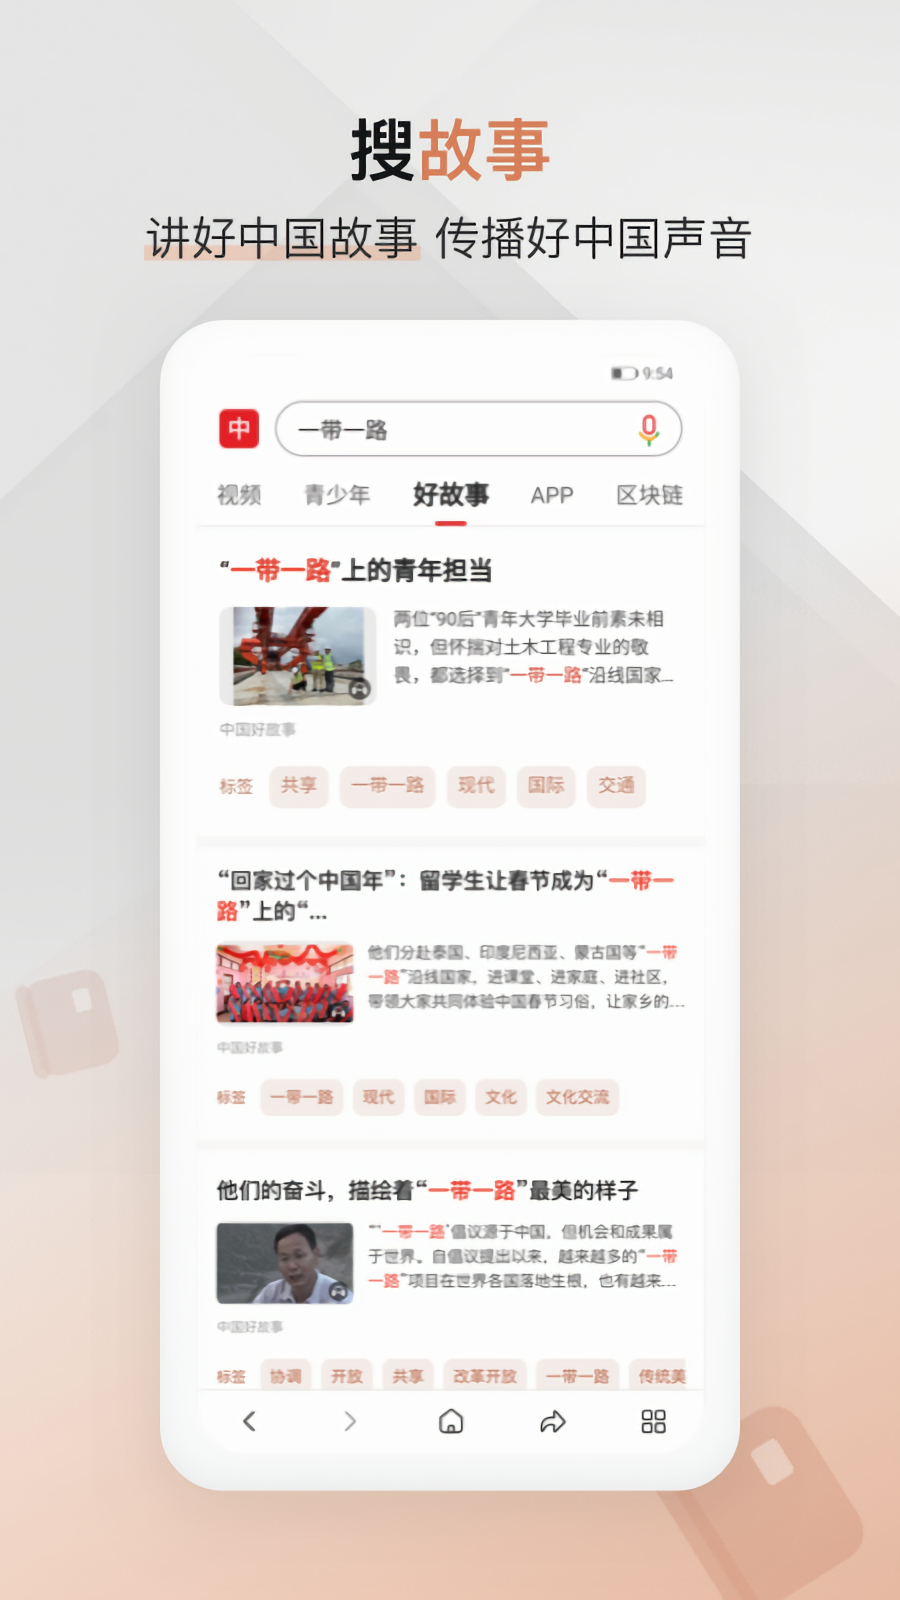 中国搜索官方免费下载app